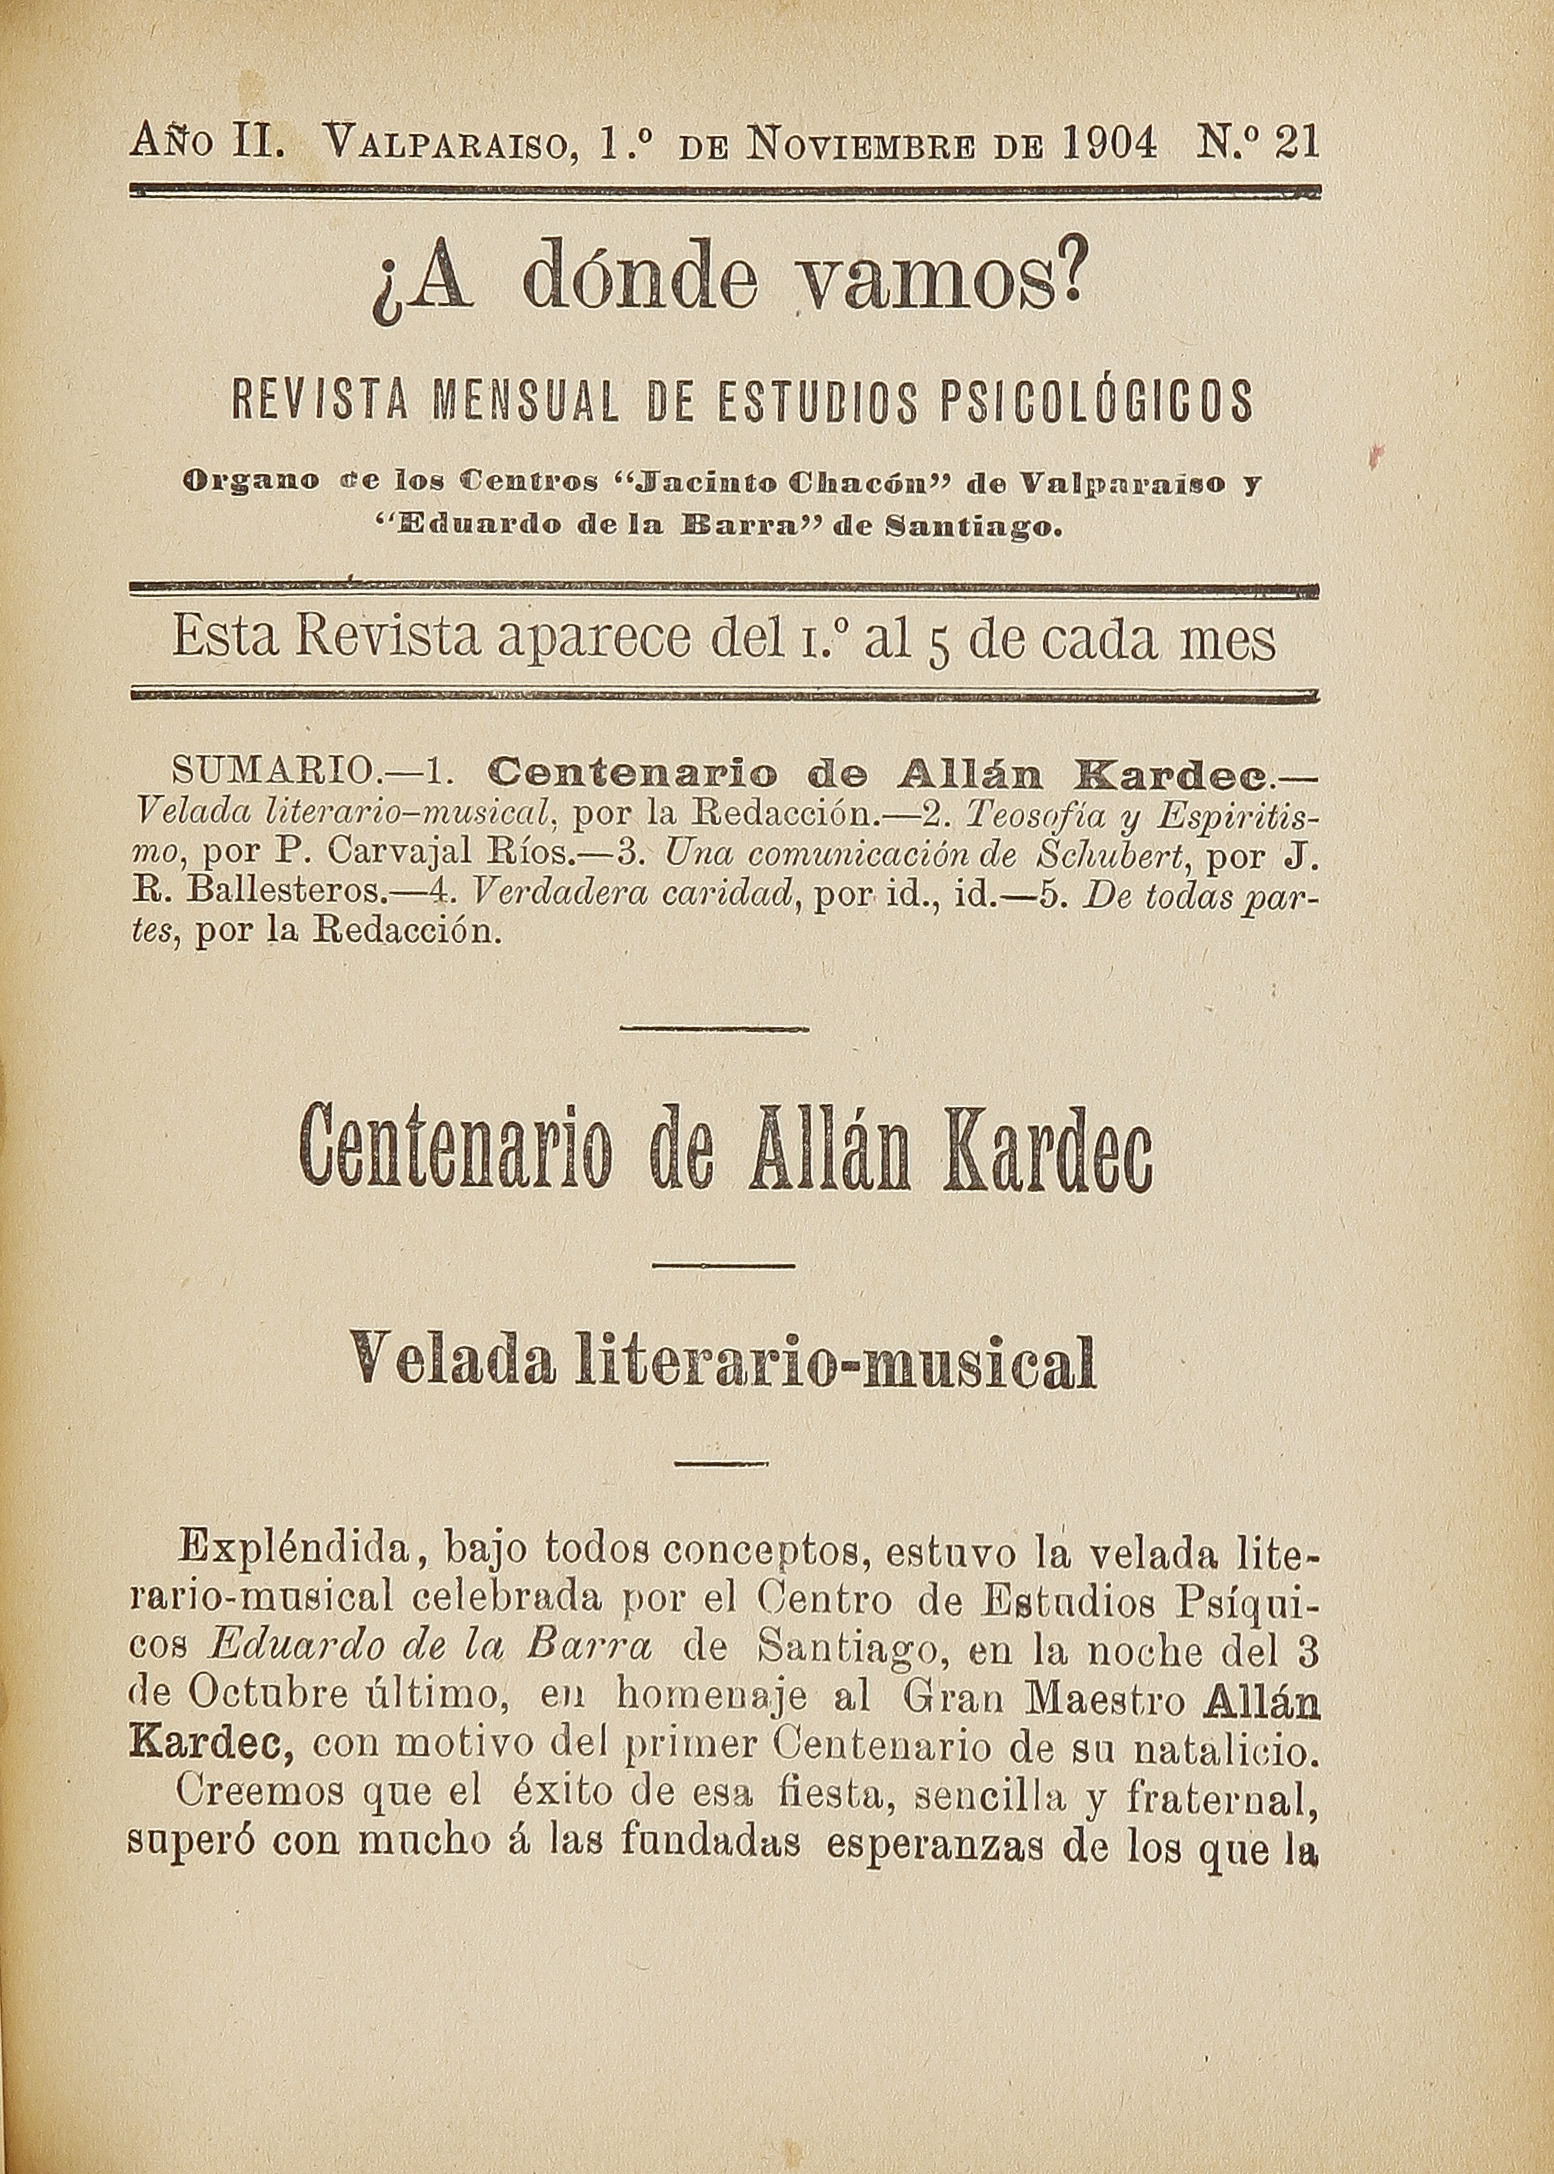 Centenario de Allan Kardec. Velada literario-musical